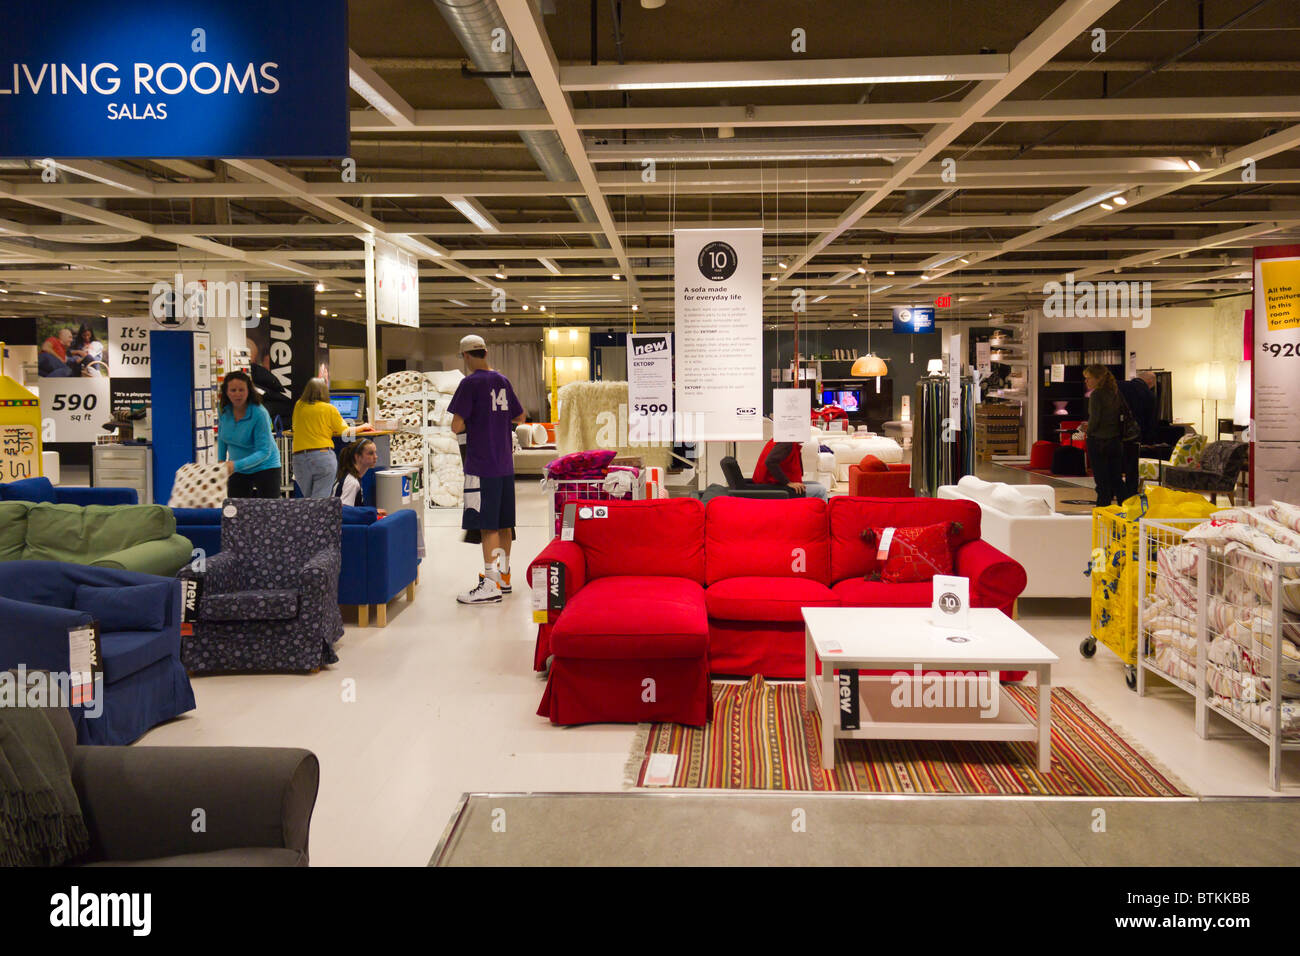 Almacén de muebles de IKEA, la tienda Plymouth Meeting, Pennsylvania, EE.UU  Fotografía de stock - Alamy